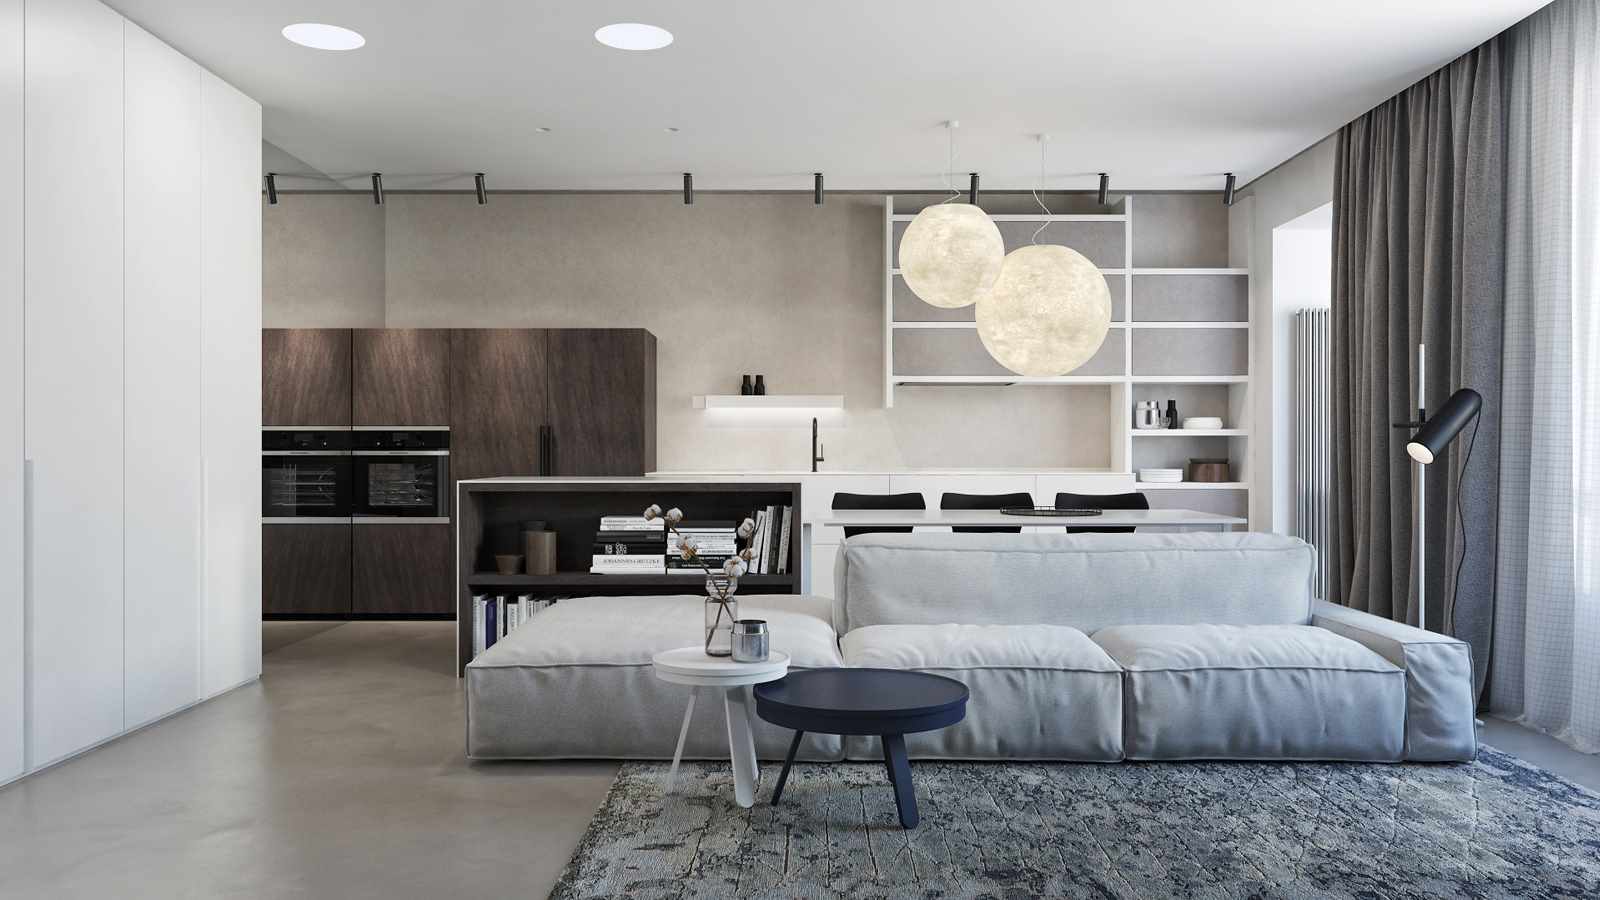 példa a nappali világos dekorációjának használatára a minimalizmus stílusában